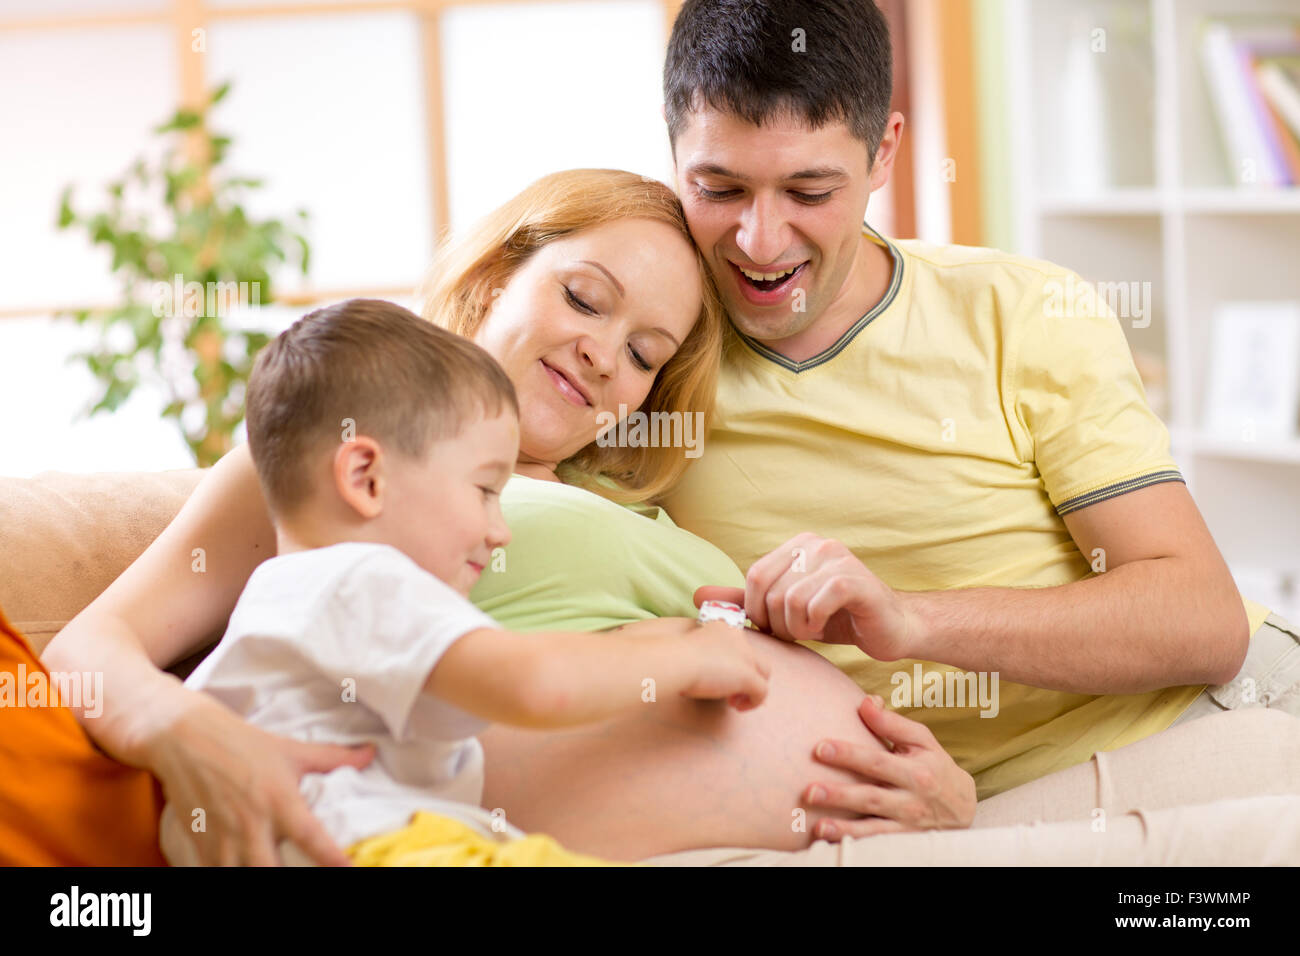 Vater und Sohn haben ein lustiges Spiel mit kleinen Auto auf Frau Bauch. Schwangere Frau mit Familie entspannt auf dem Sofa im Wohnzimmer. Stockfoto